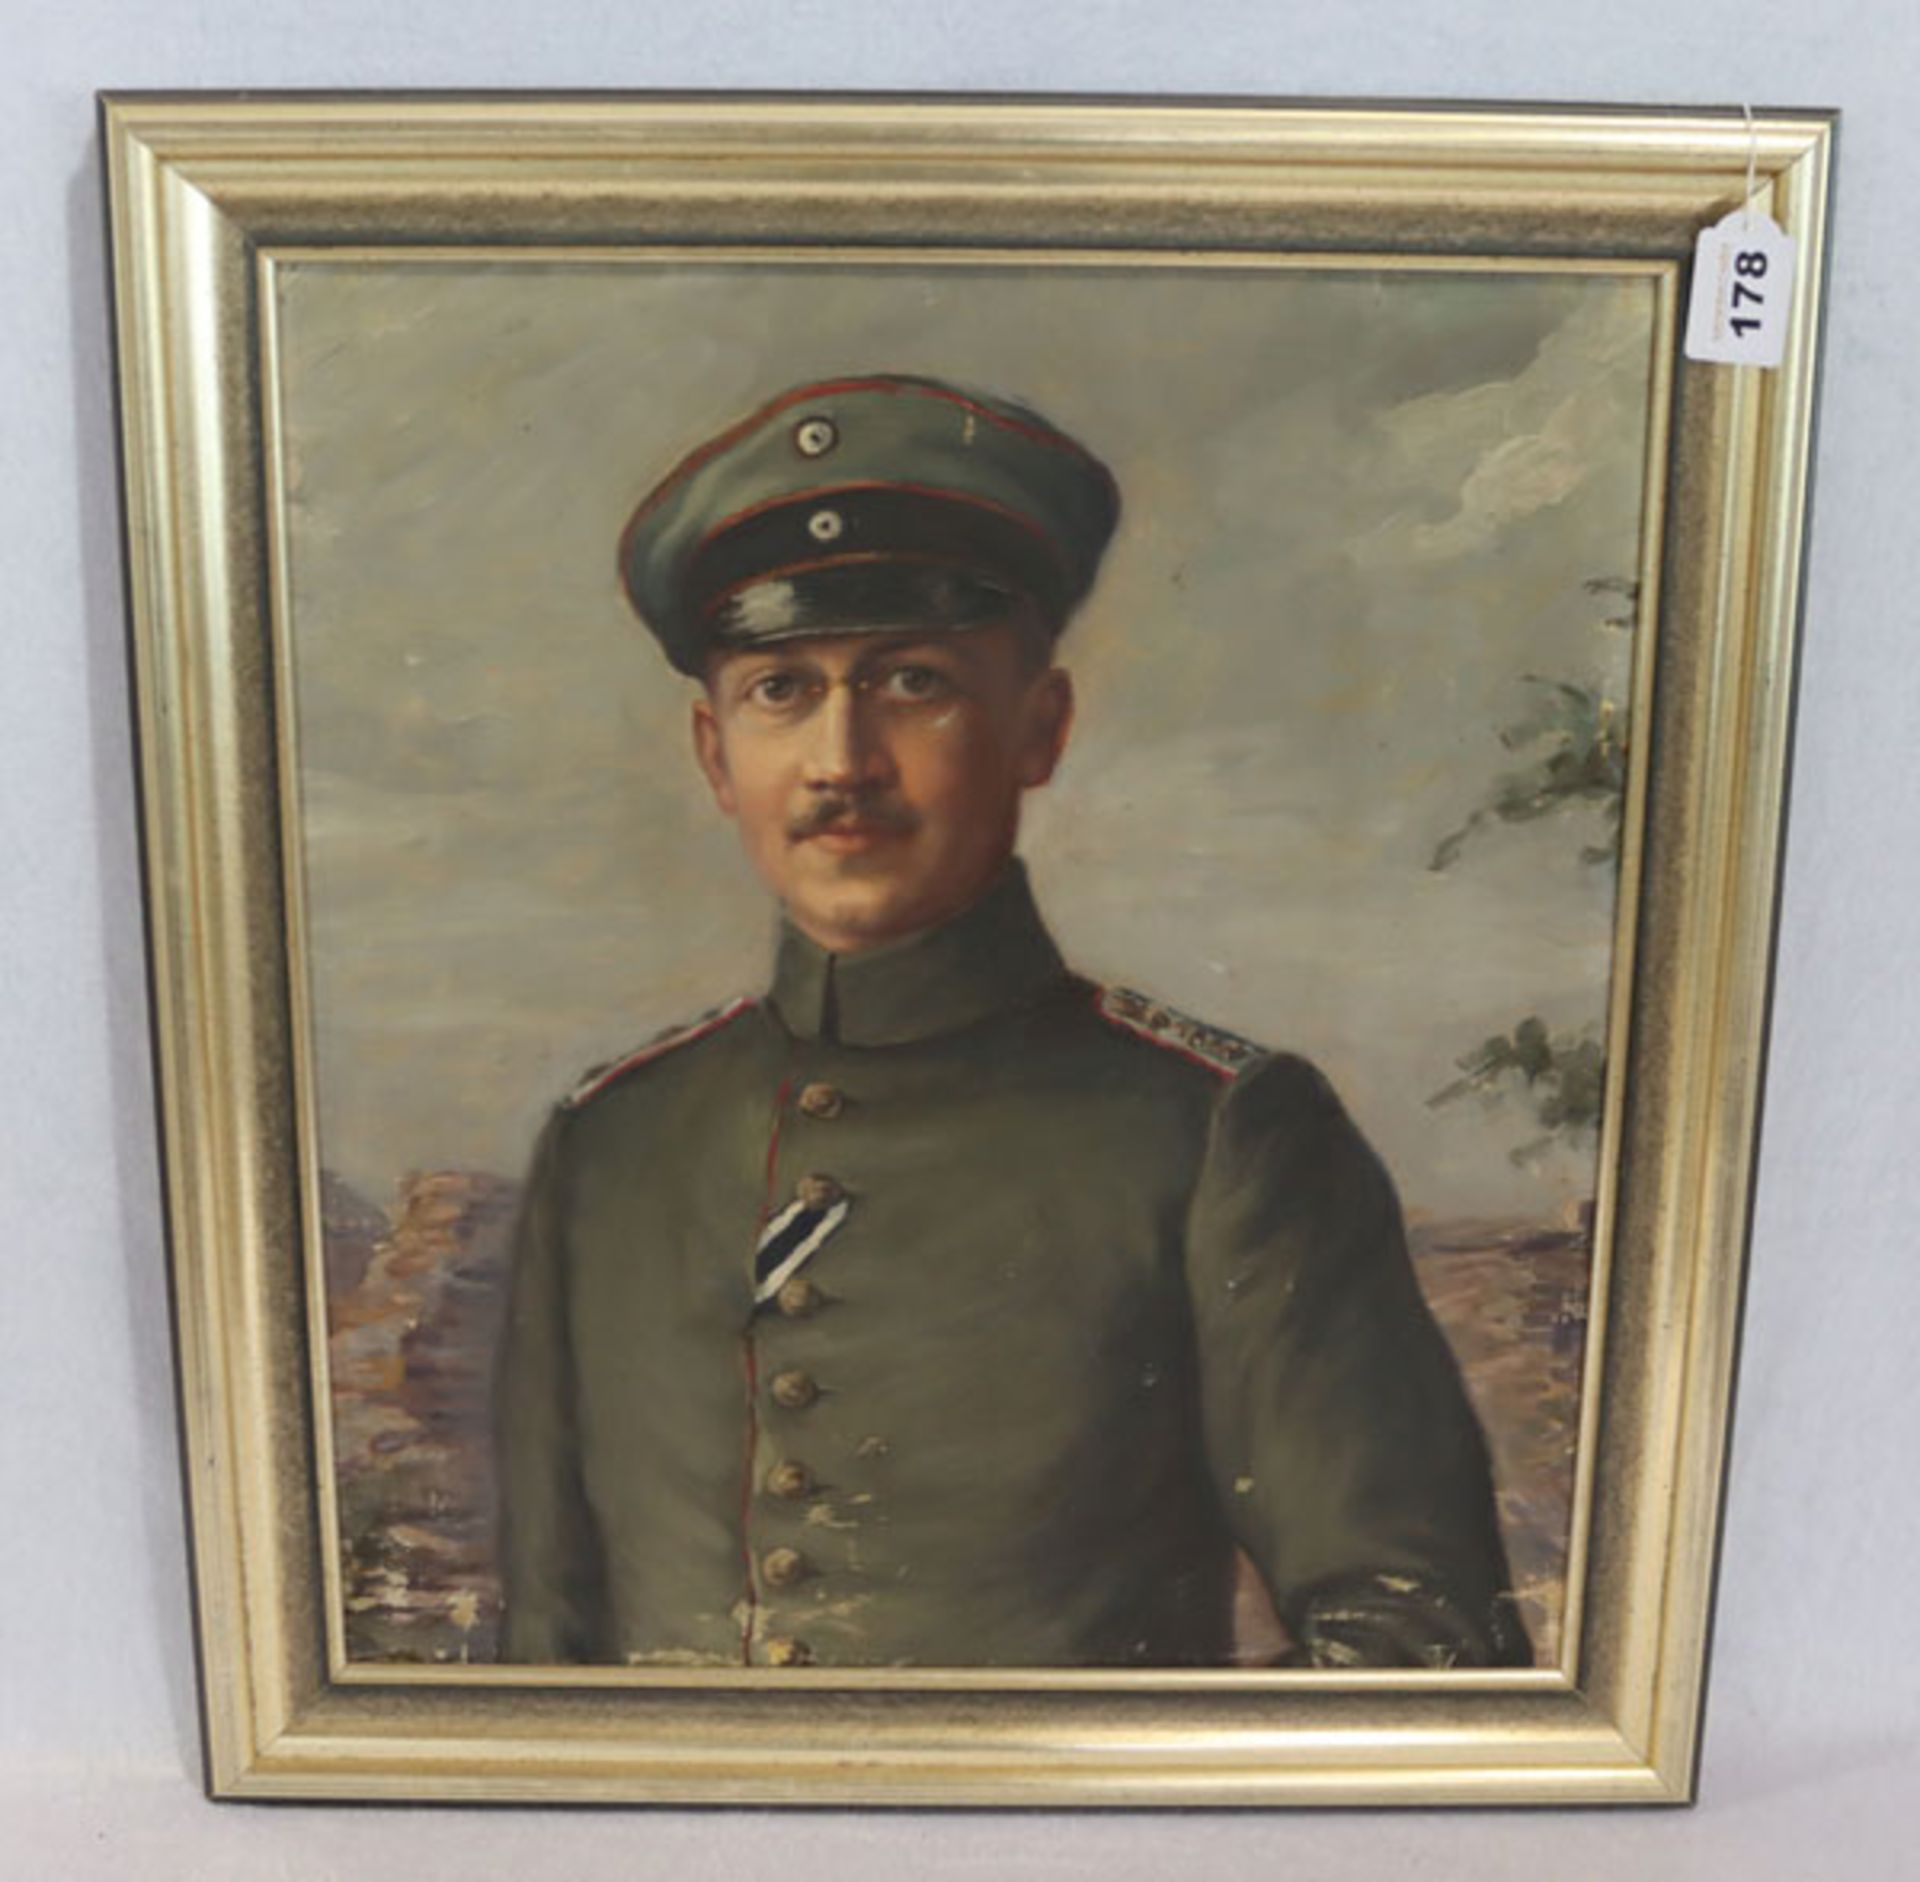 Gemälde ÖL/LW 'Offizier aus dem 1. Weltkrieg', LW wurde mehrmals gefaltet und gerahmt, Rahmen